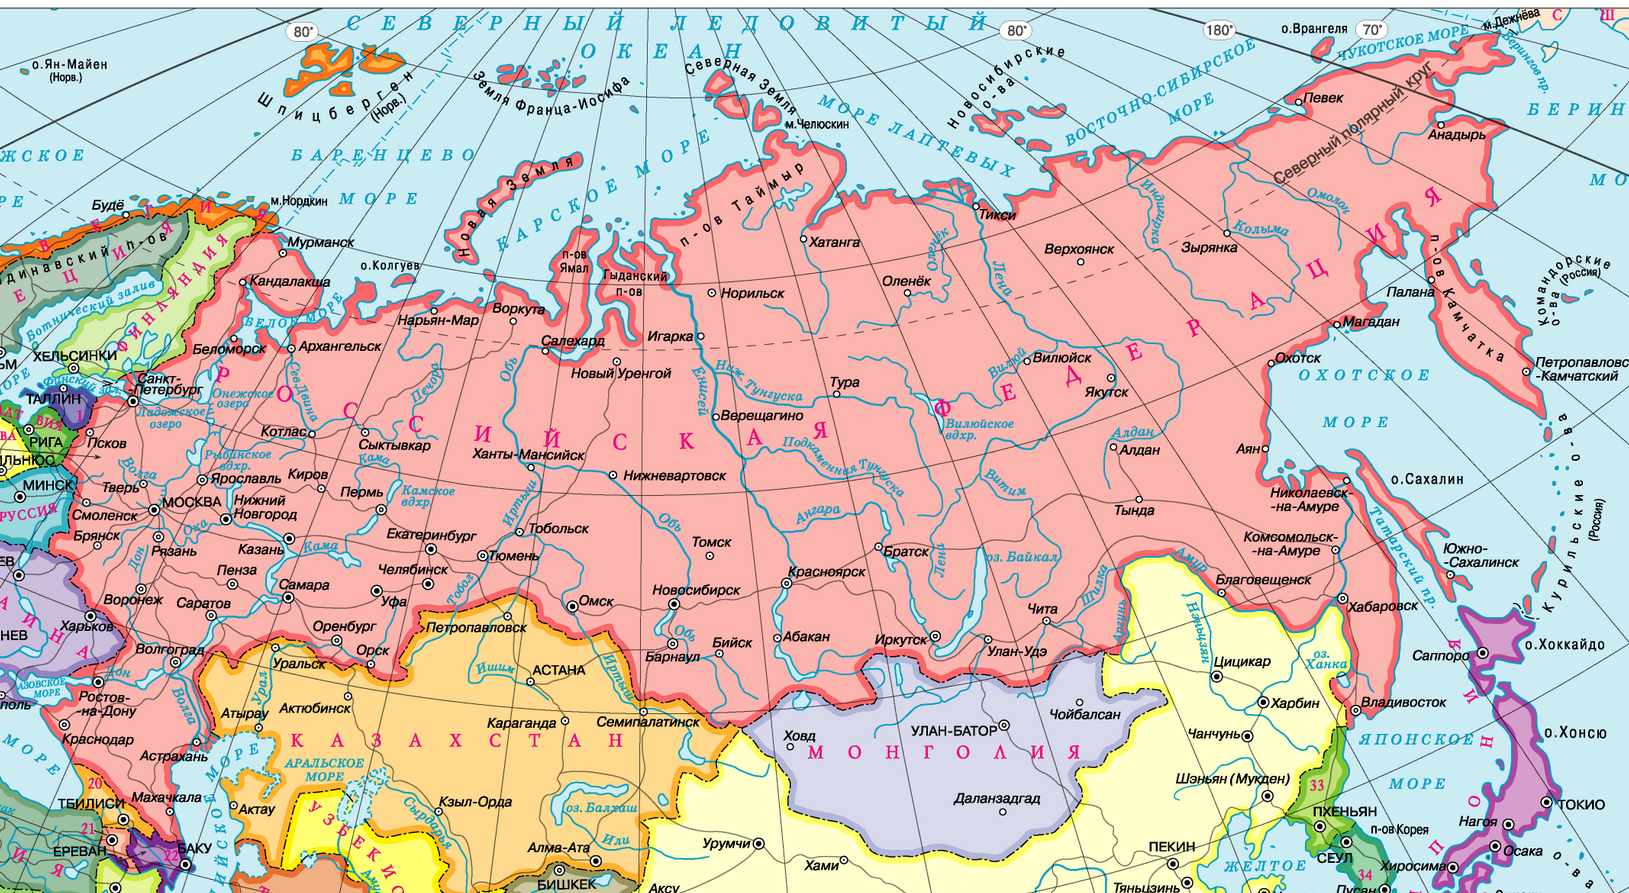 Карта россии с названиями областей и республик